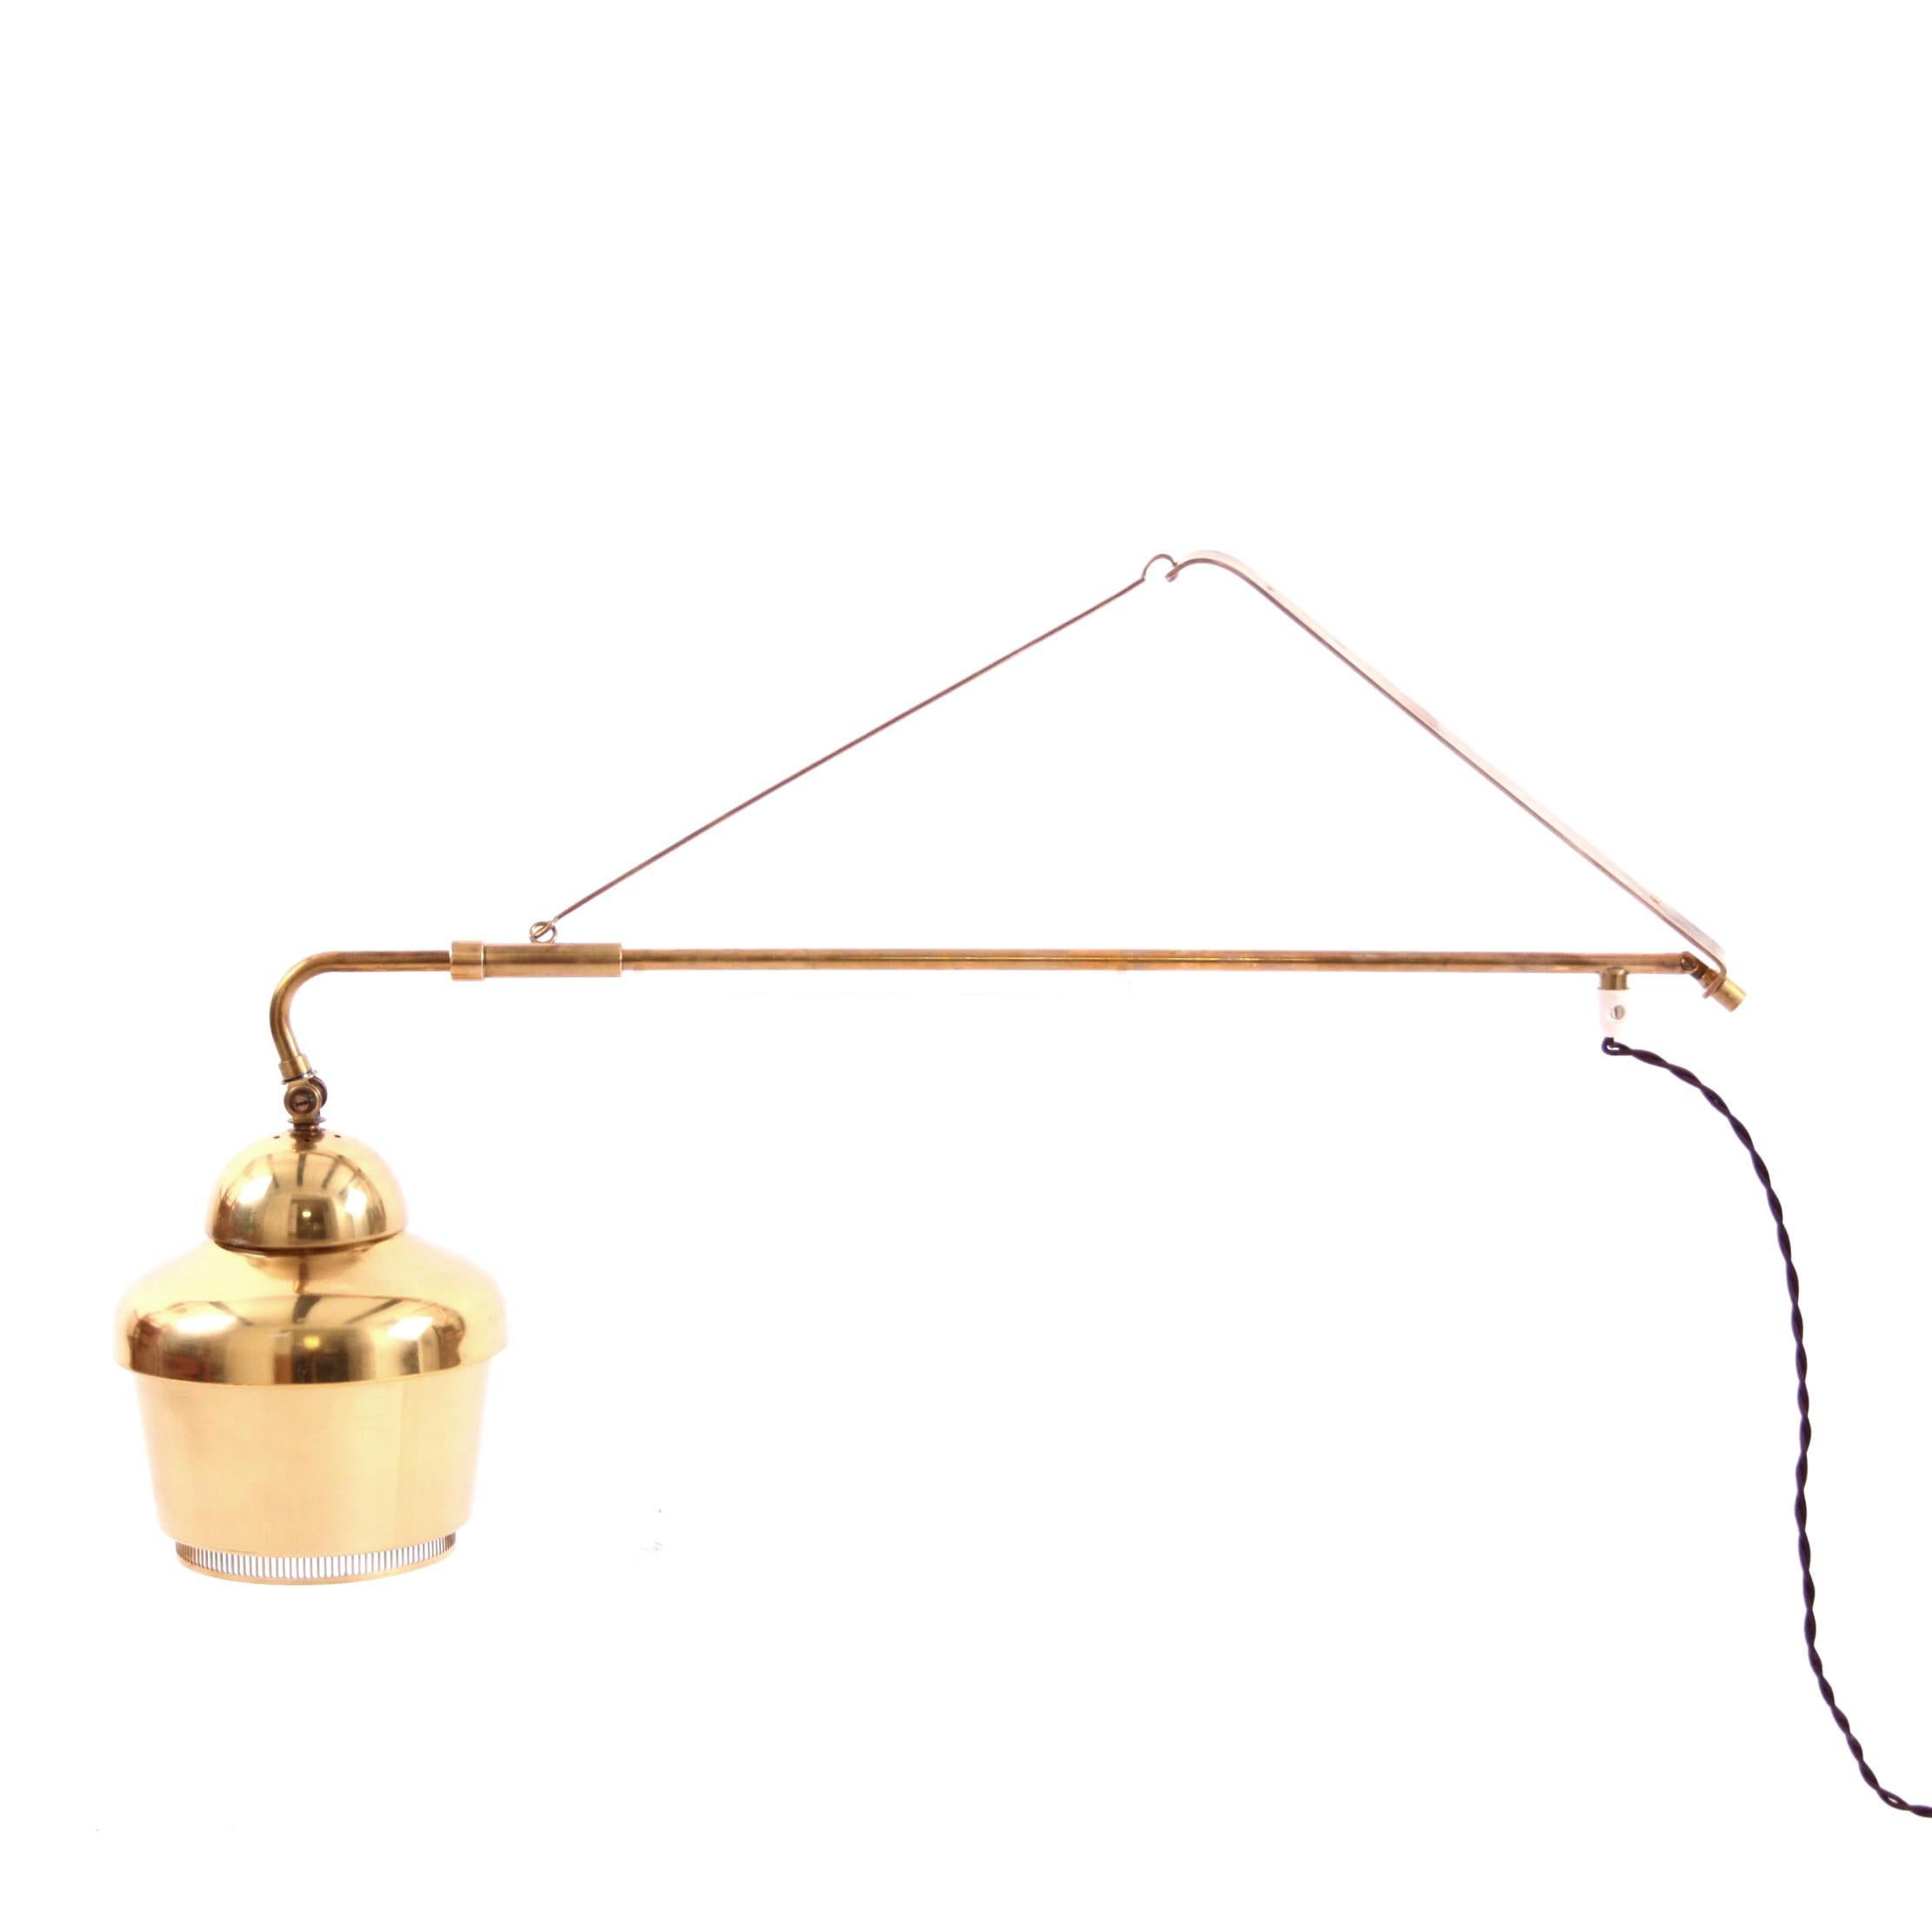 ALVAR AALTO & VALAISTUTYO - SKANDINAVISCHE MODERNE

Eine seltene Wandleuchte aus Messing von Alvar Aalto. Die Leuchte ist eine Version der klassischen Alvar Aalto-Goldglocke, Modell A 3305, als Pendelleuchte.

Die ursprünglich 1937 entworfene Lampe